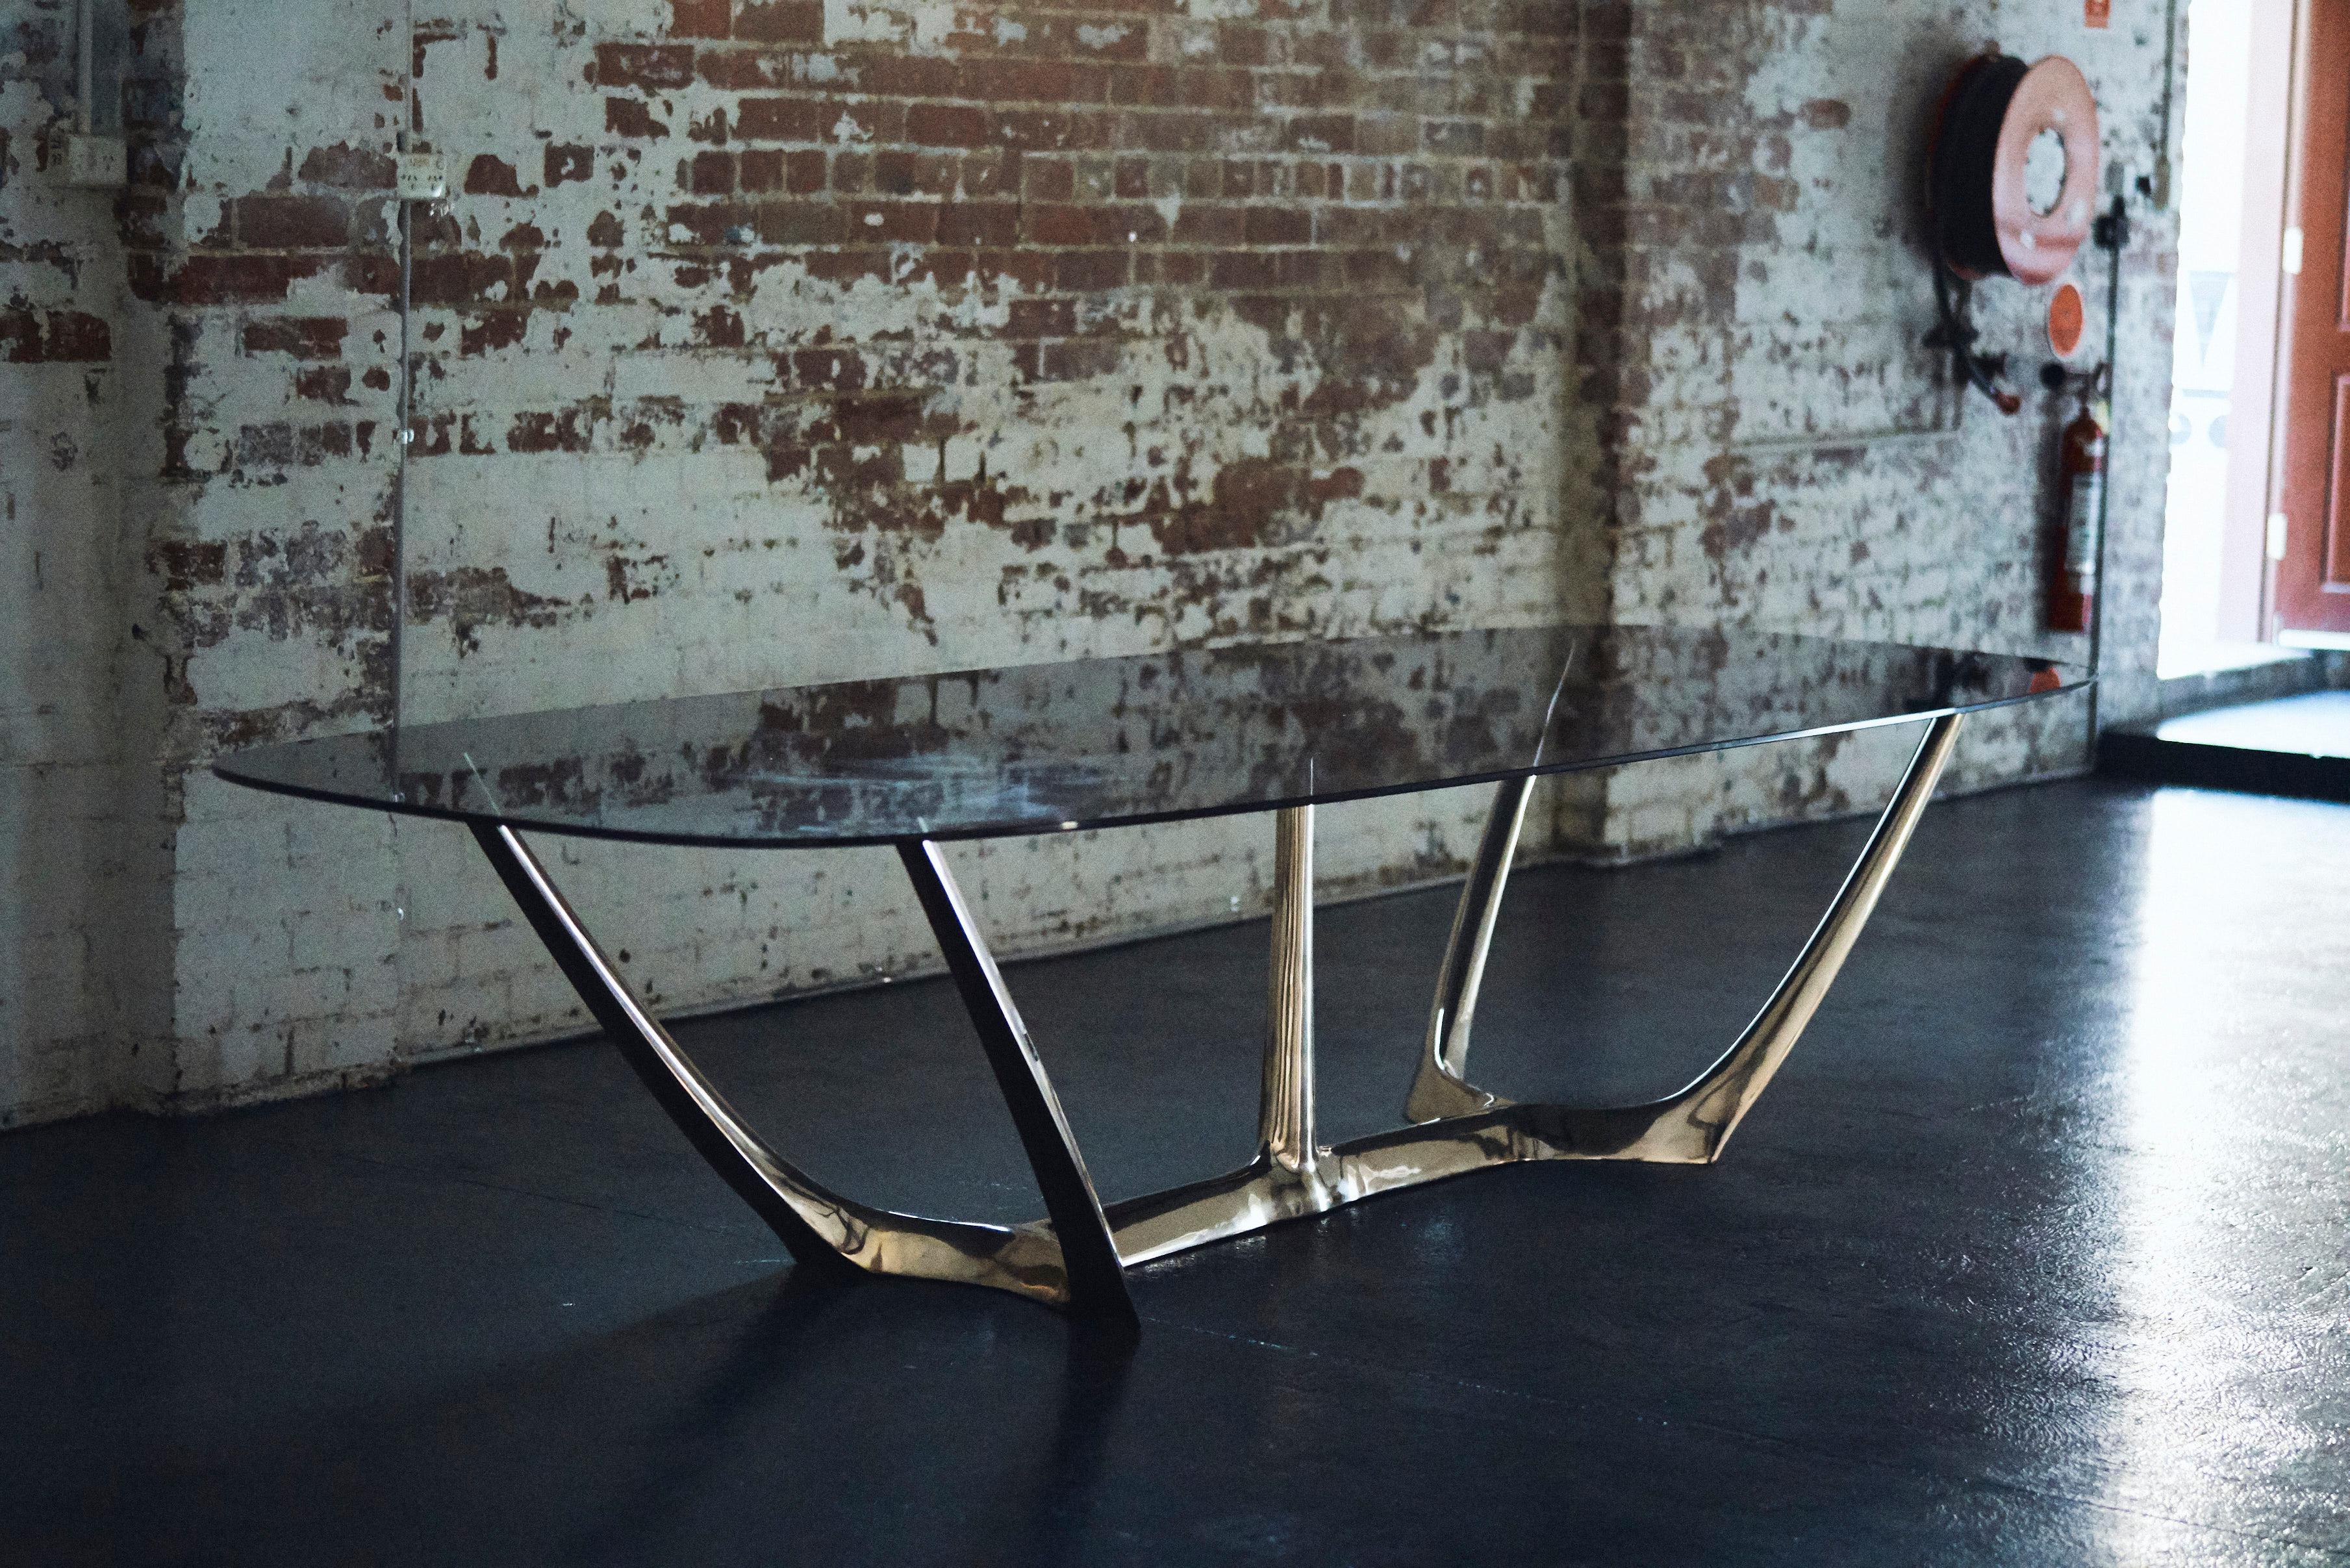 Der von Daniel BARBERA entworfene Esstisch besteht aus einer skulpturalen Form aus Bronze, die mit grau getöntem Hartglas kombiniert ist. Der große Esstisch ist die Krönung einer über zehnjährigen Arbeit mit Bronze. Inspiriert von Organismen und